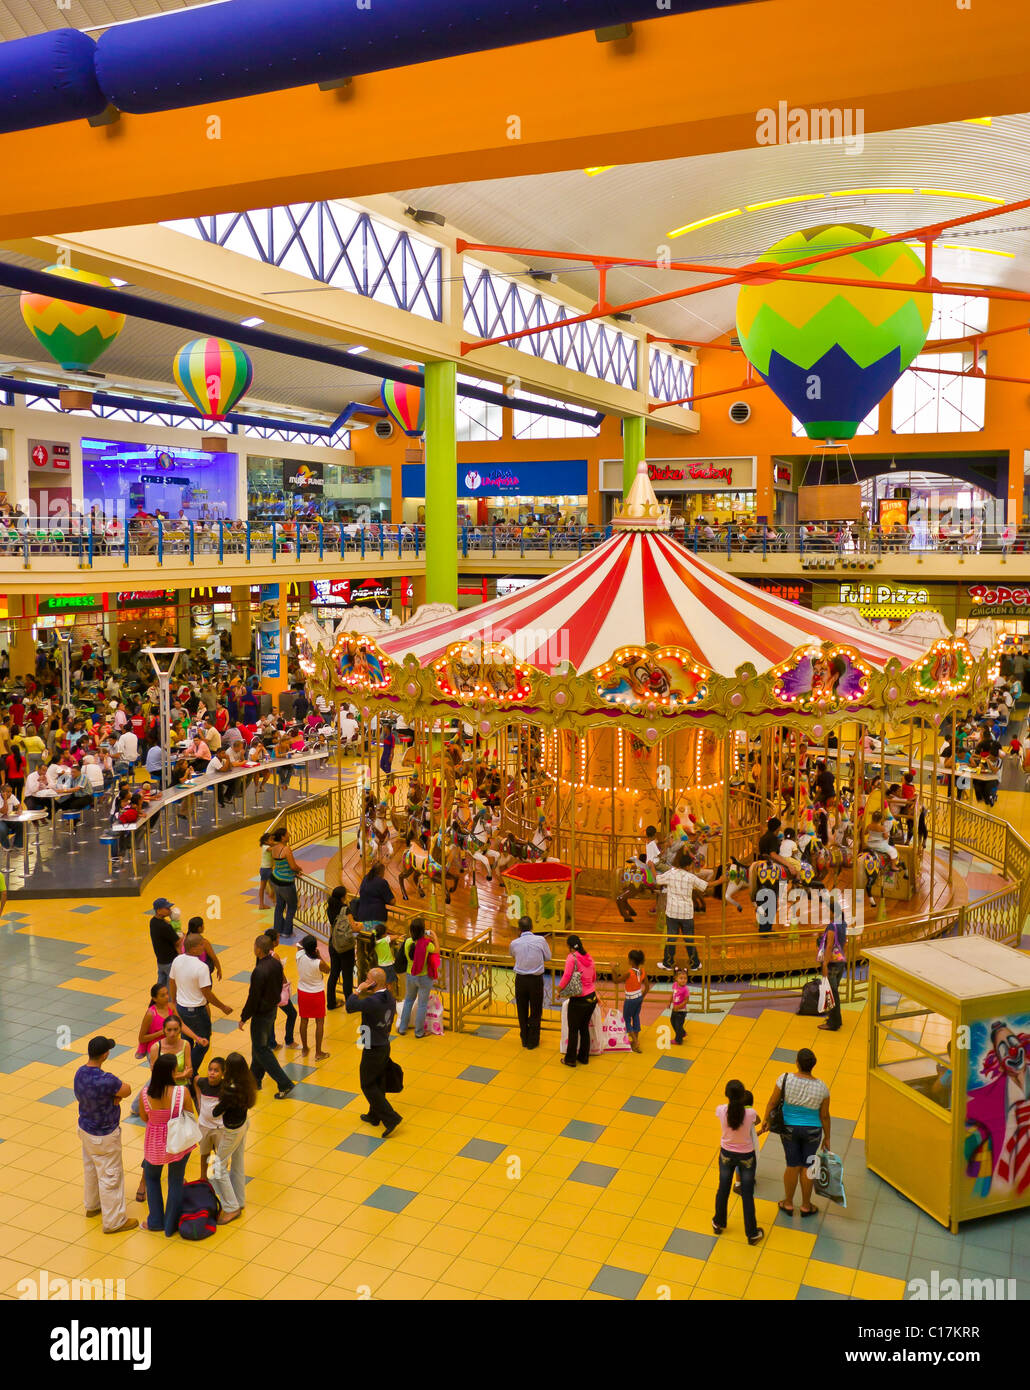 Ciudad de Panamá, Panamá - Albrook Mall y del carrusel Fotografía de stock  - Alamy